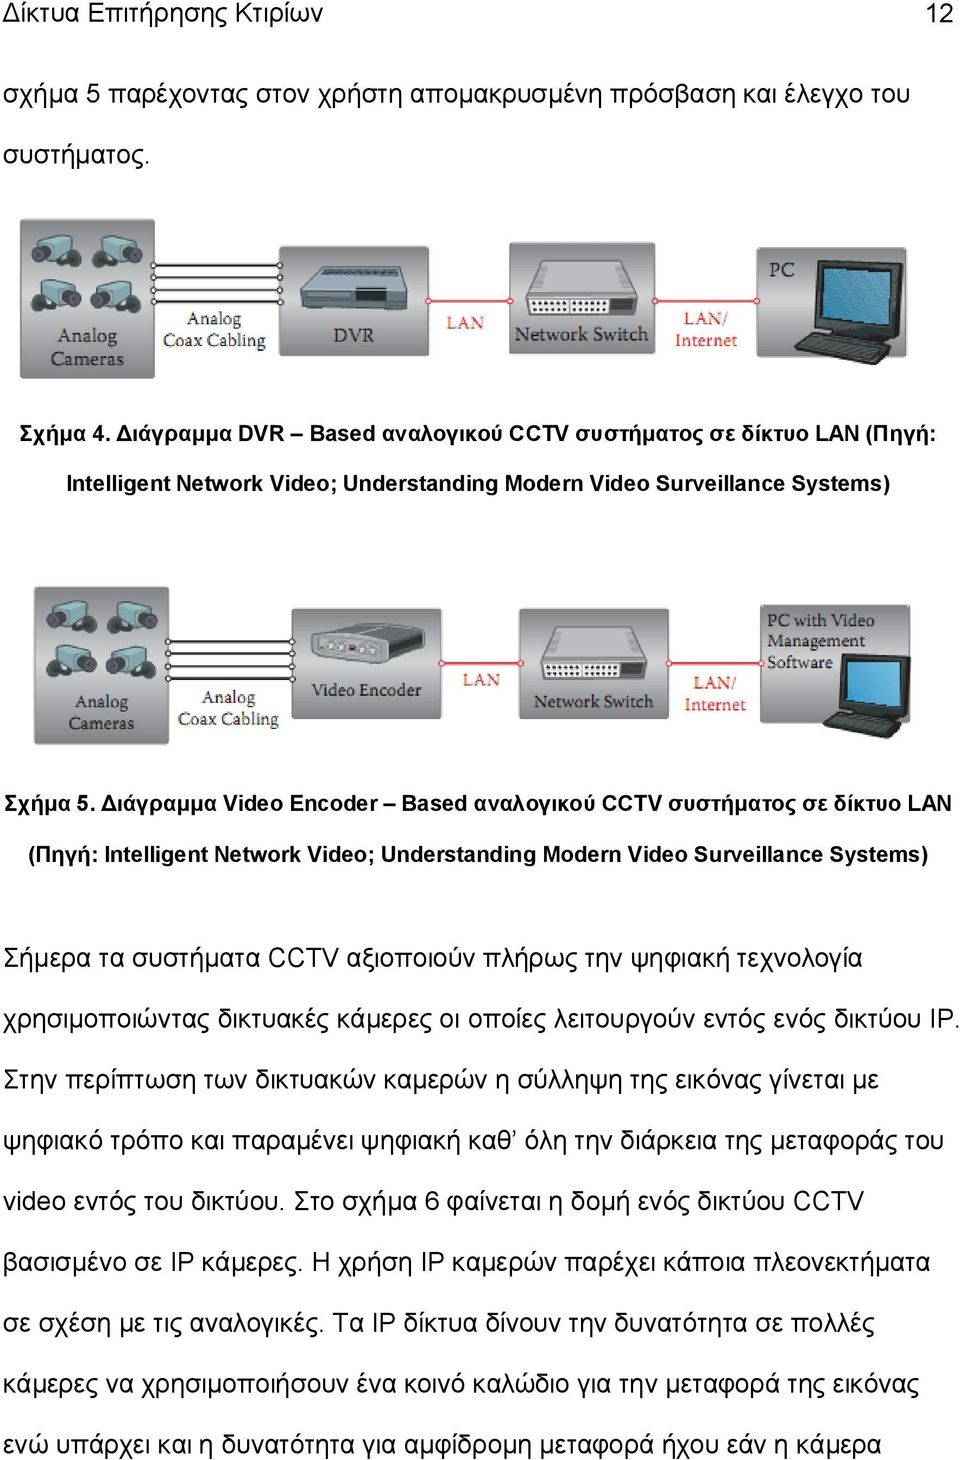 Διάγραμμα Video Encoder Based αναλογικού CCTV συστήματος σε δίκτυο LAN (Πηγή: Intelligent Network Video; Understanding Modern Video Surveillance Systems) Σήμερα τα συστήματα CCTV αξιοποιούν πλήρως